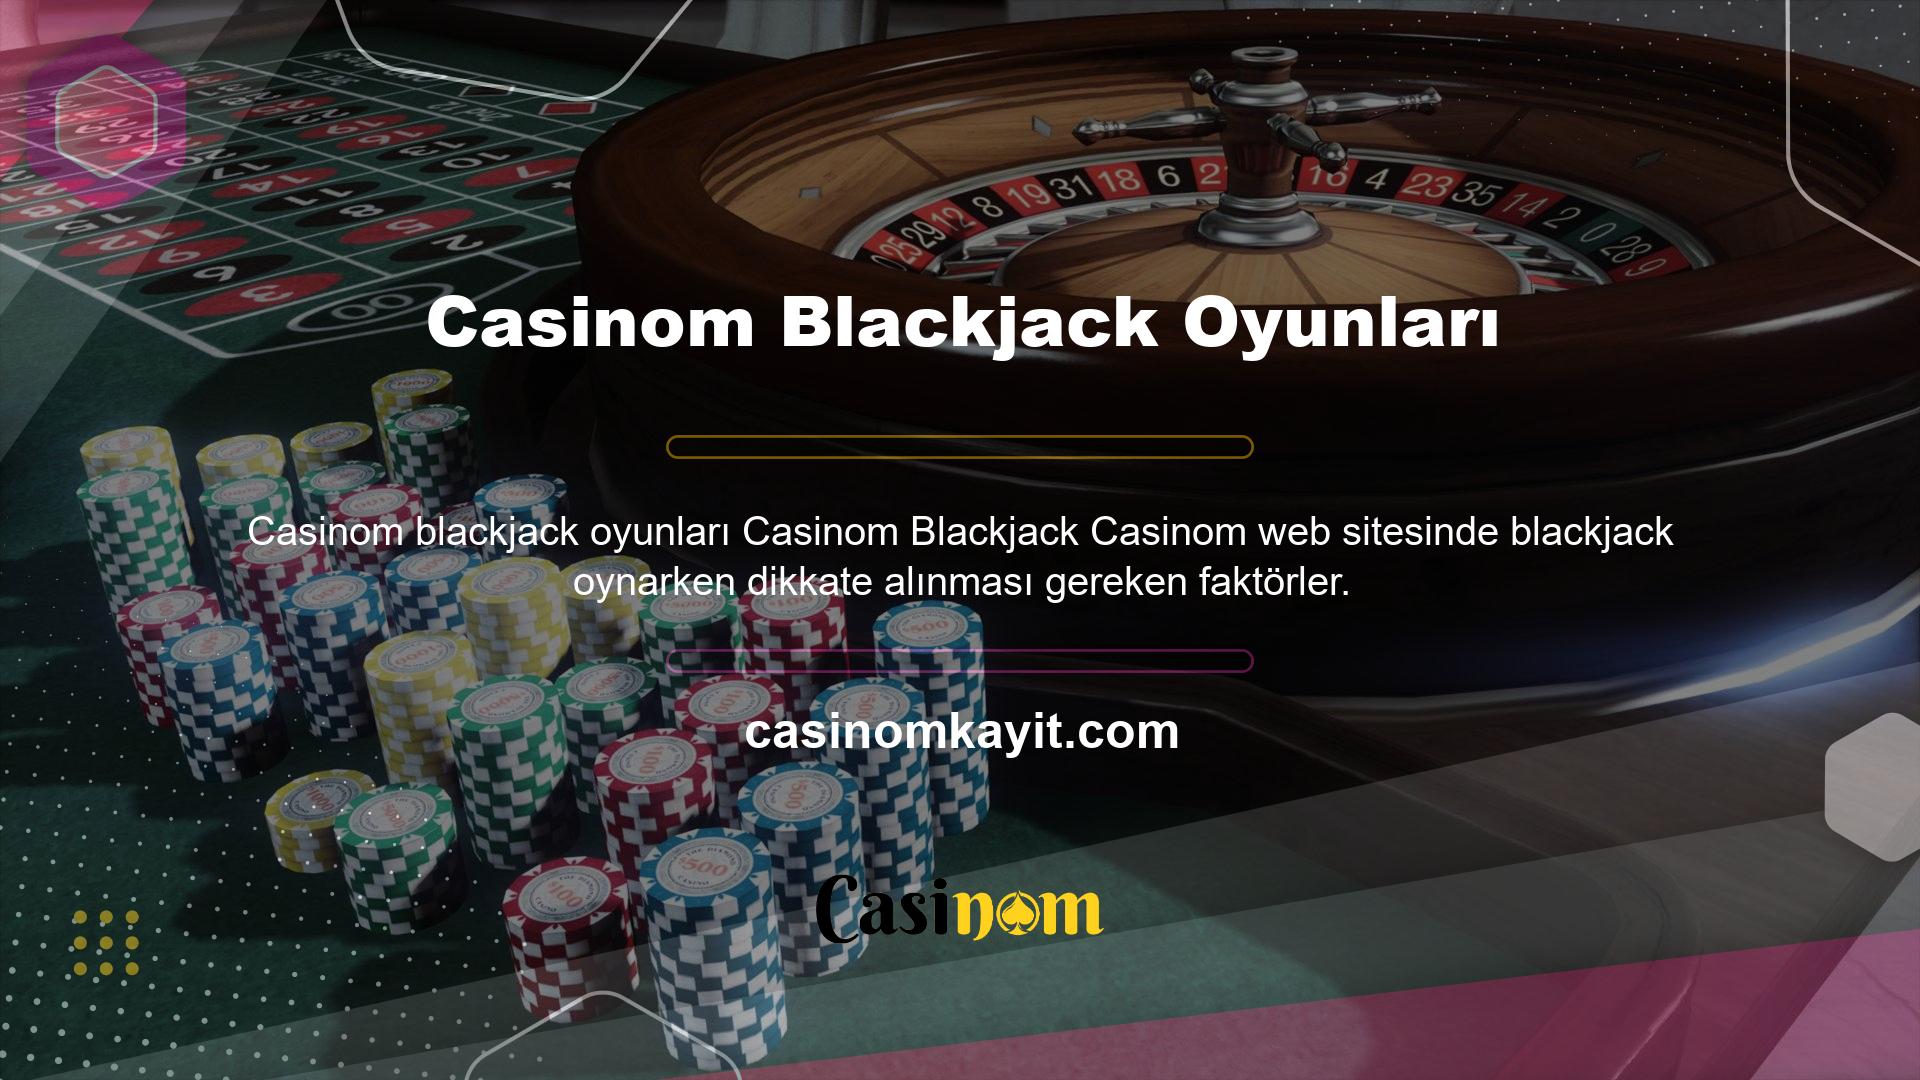 Blackjack'te amaç, oyuncunun eli bitmeden krupiyerden daha yüksek bir sayıya ulaşmaktır